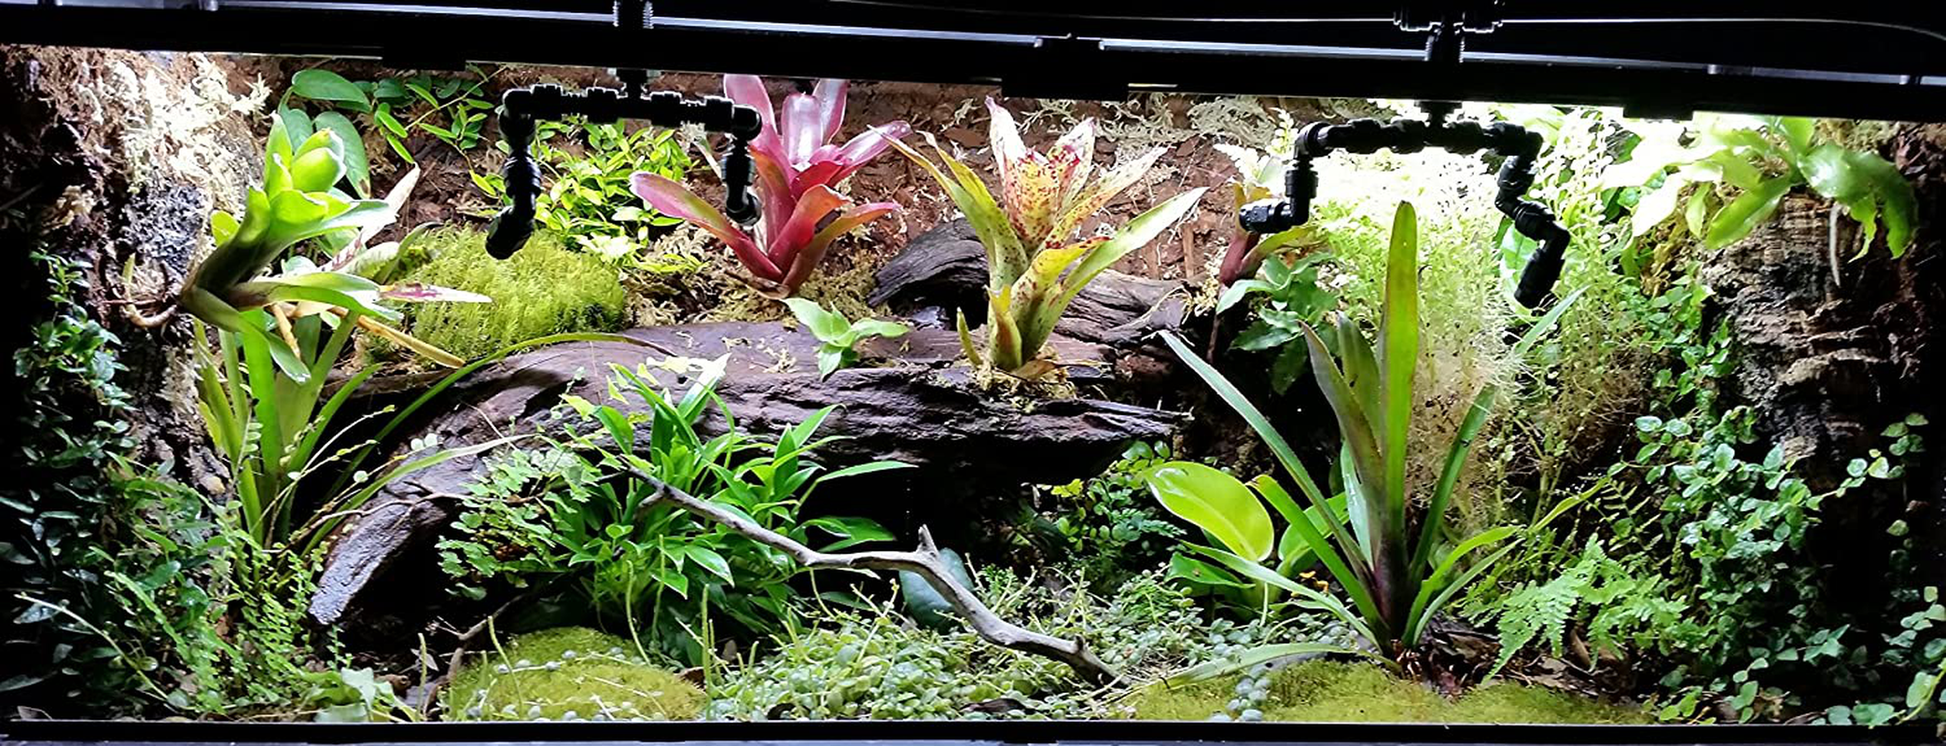 Josh'S Frogs ABG Mix Tropical Plant Soil & Terrarium Vivarium Substrate (4 Quart/1 Gallon) Animals & Pet Supplies > Pet Supplies > Reptile & Amphibian Supplies > Reptile & Amphibian Substrates Josh's Frogs   